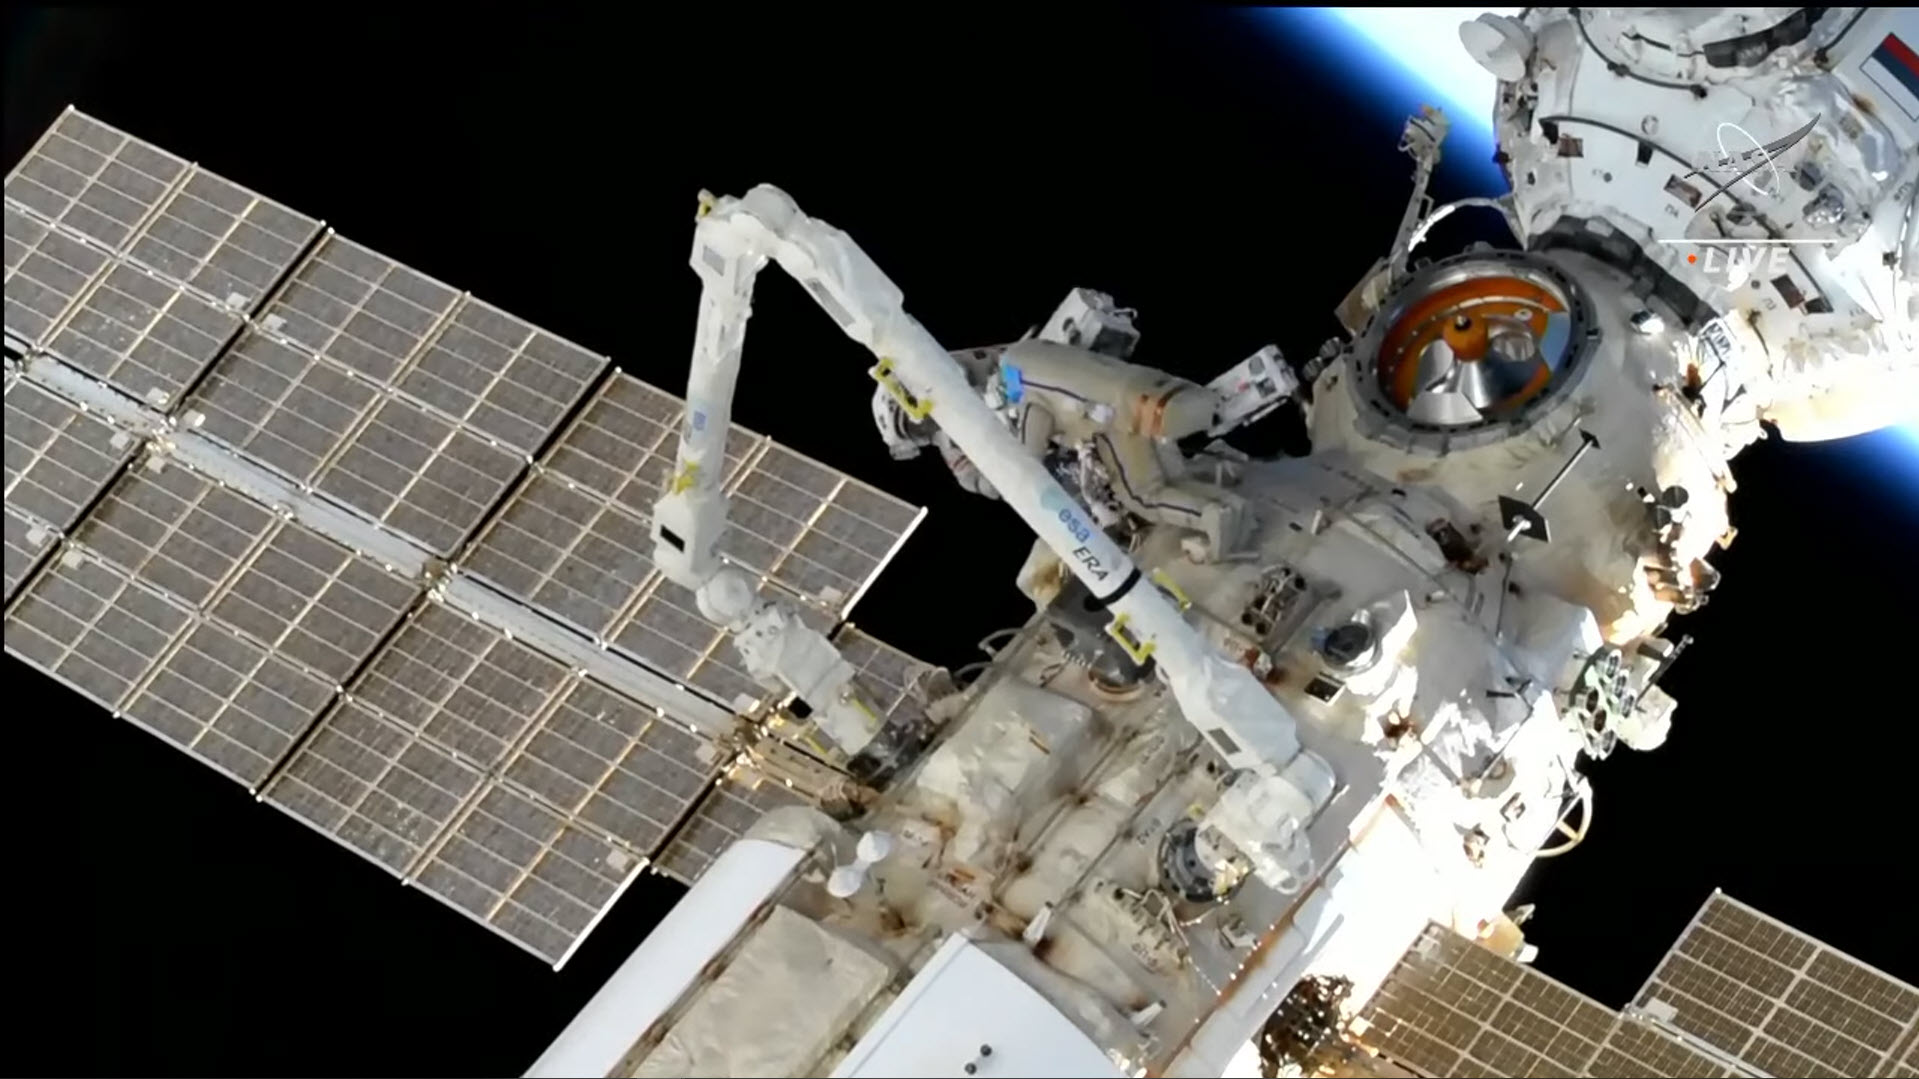 นักบินอวกาศหยุดปฏิบัติงานนอก ISS ก่อนกำหนด หลังพบชุดอวกาศมีปัญหา